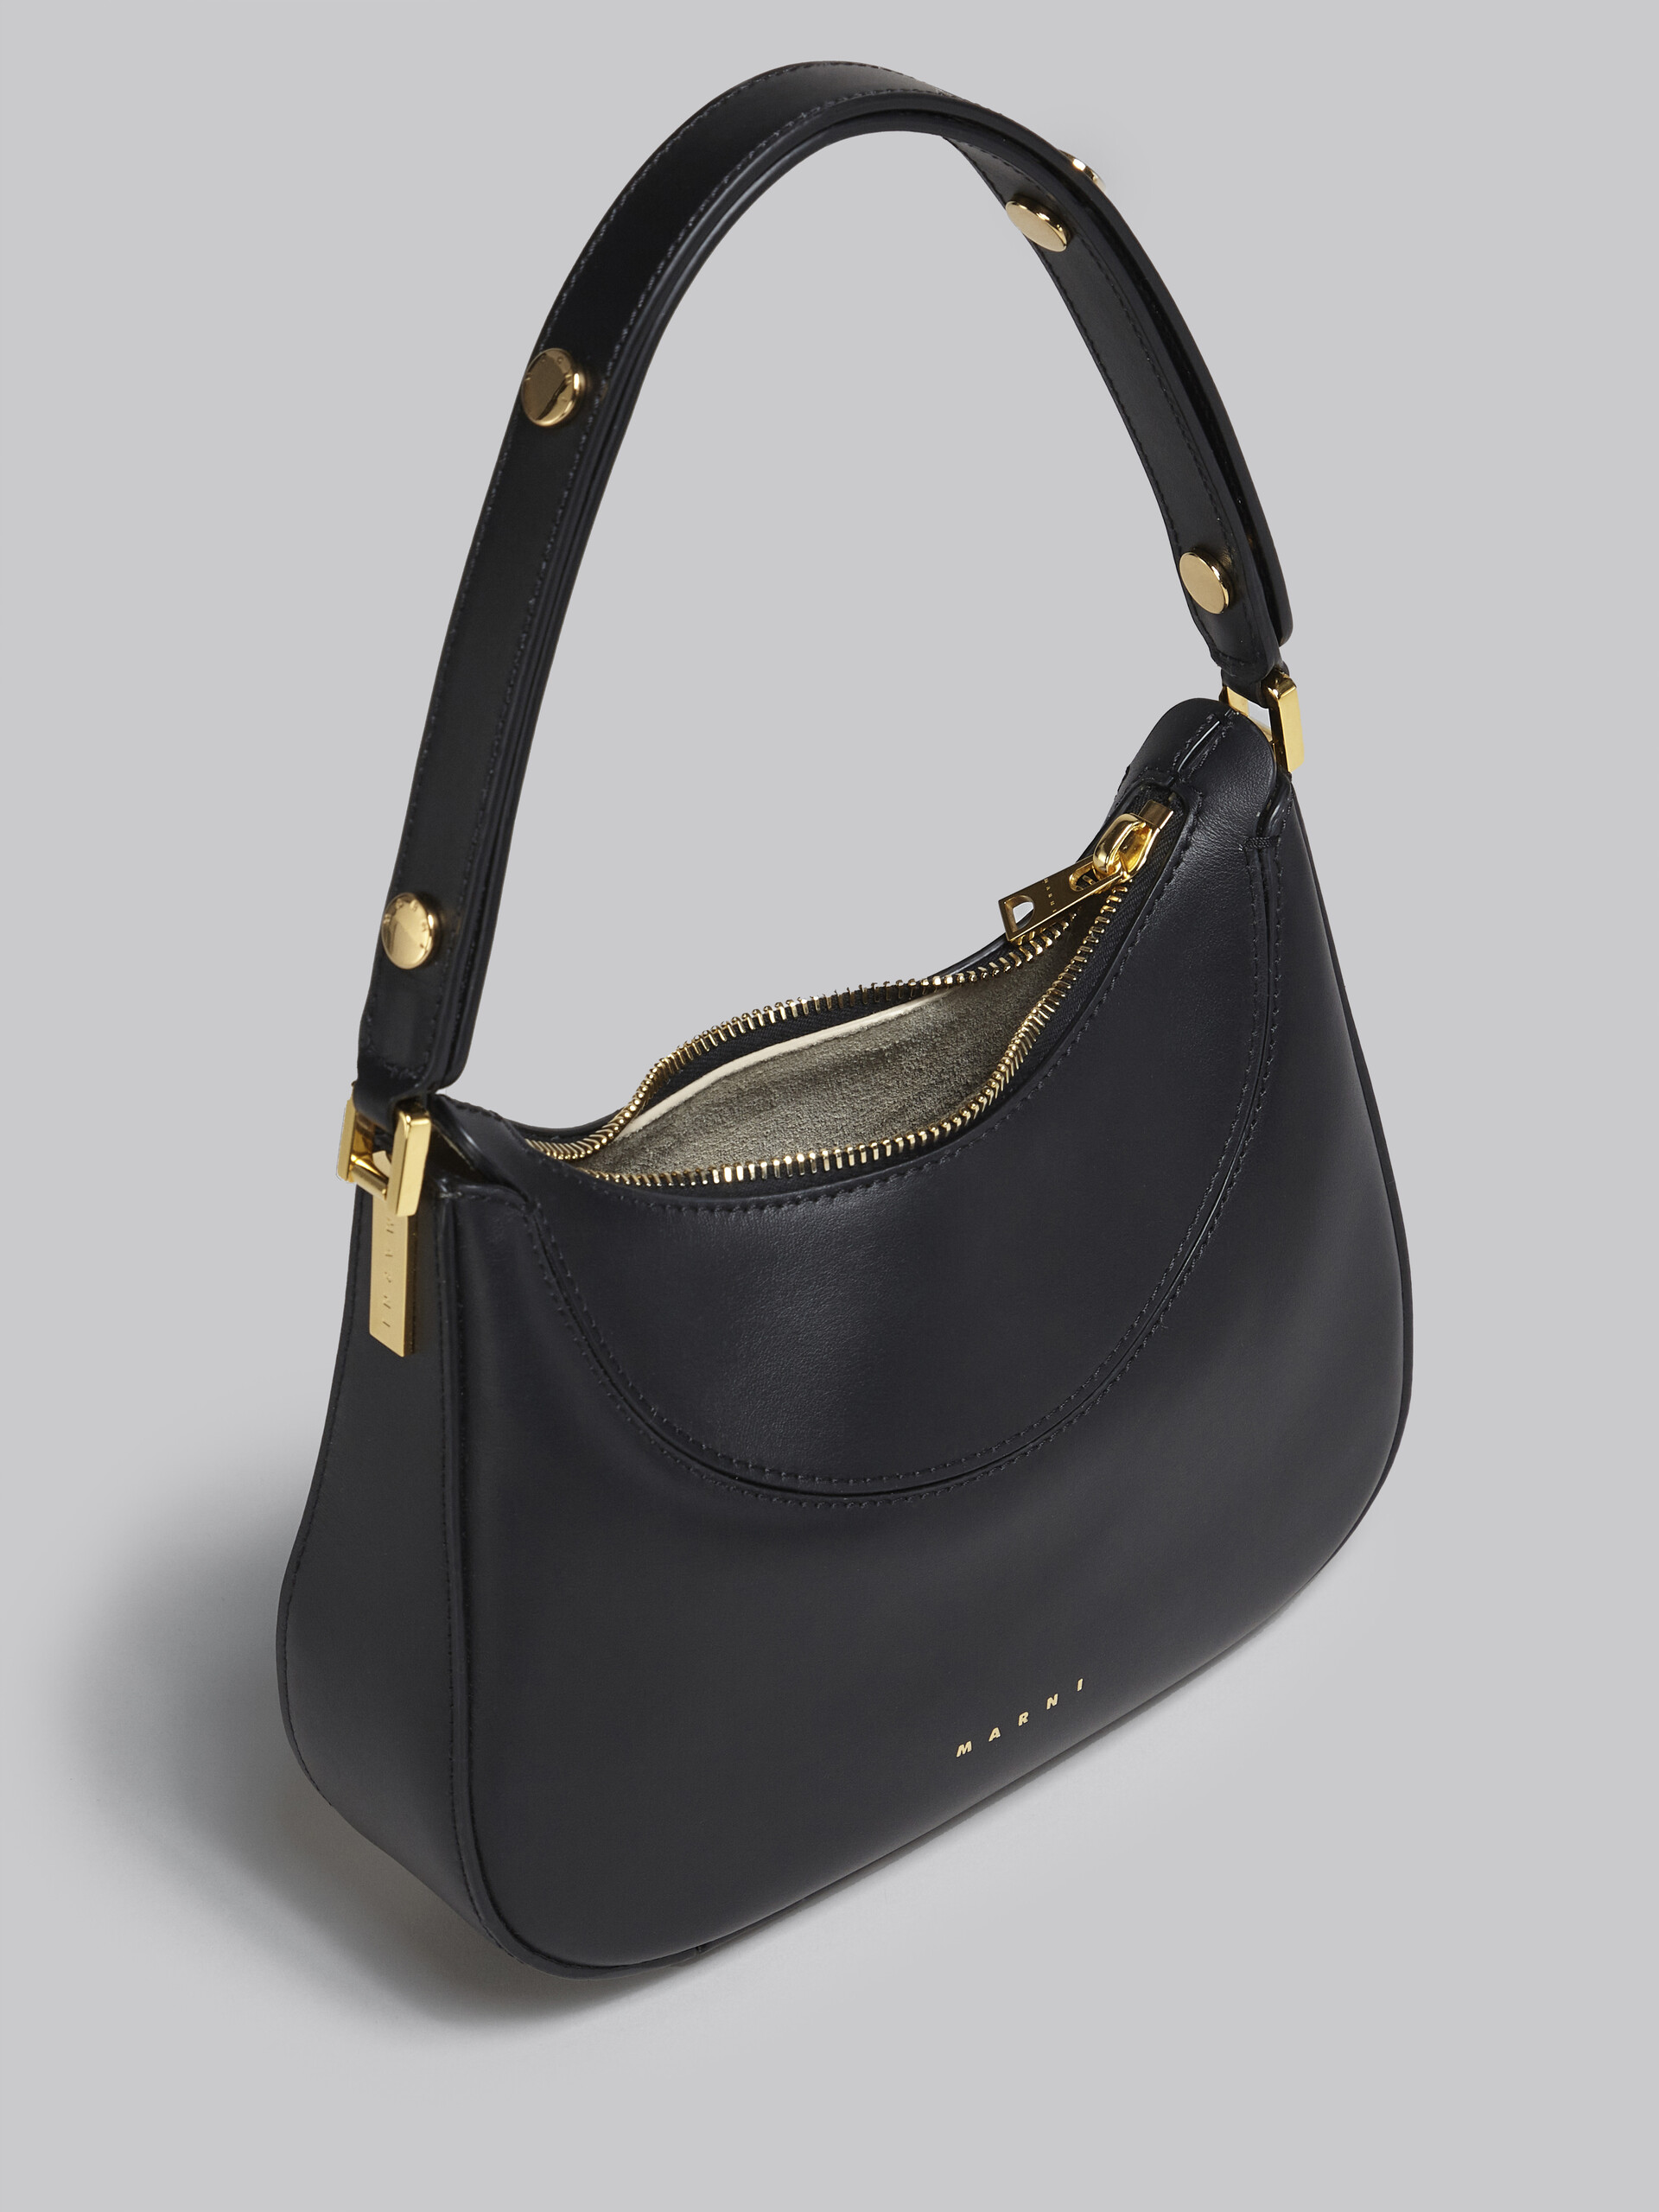 Milano mini bag in black leather - Handbag - Image 4